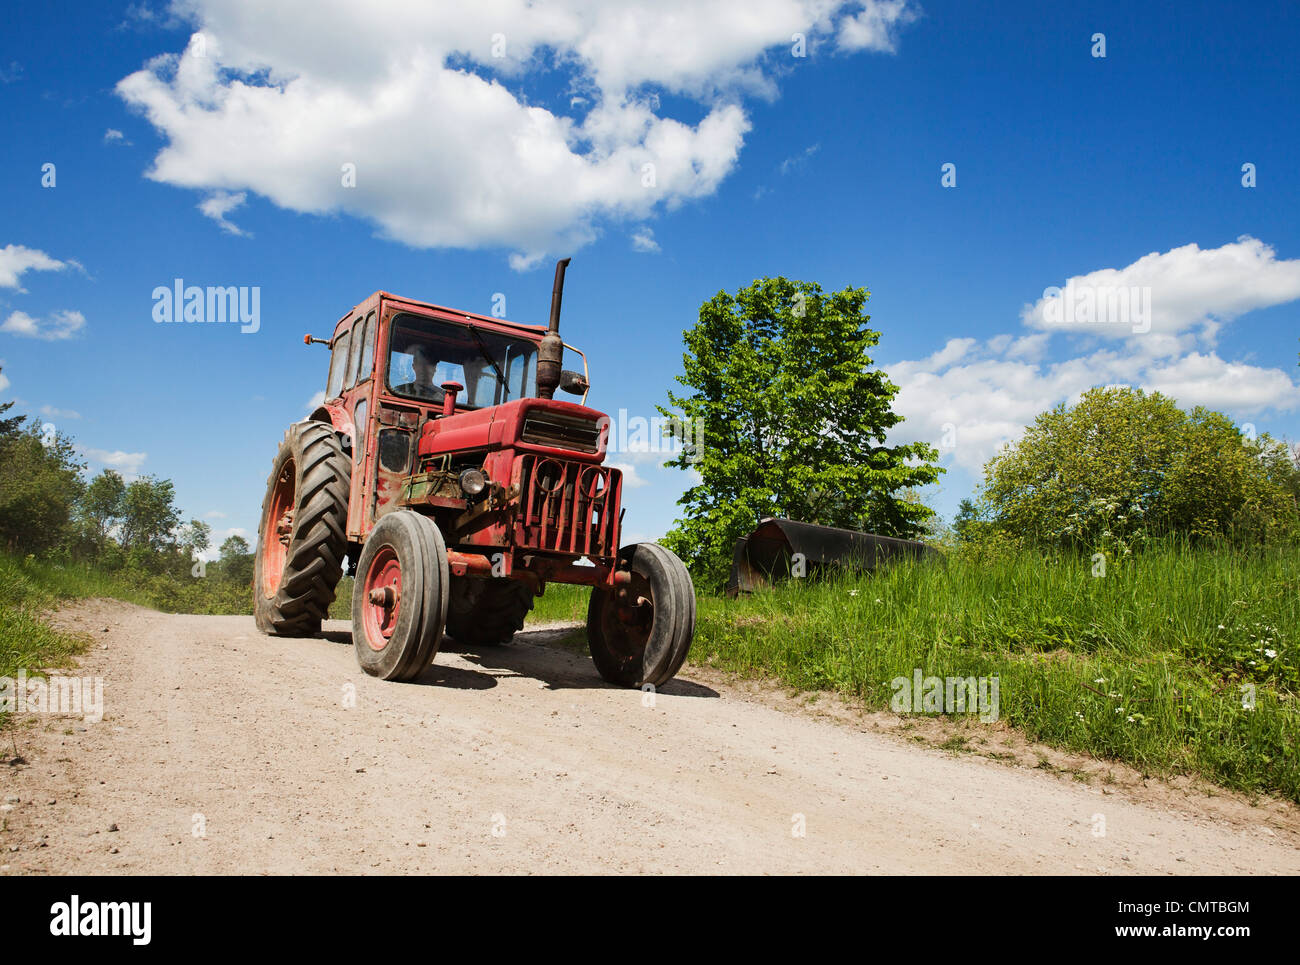 Le tracteur sur route de campagne Banque D'Images